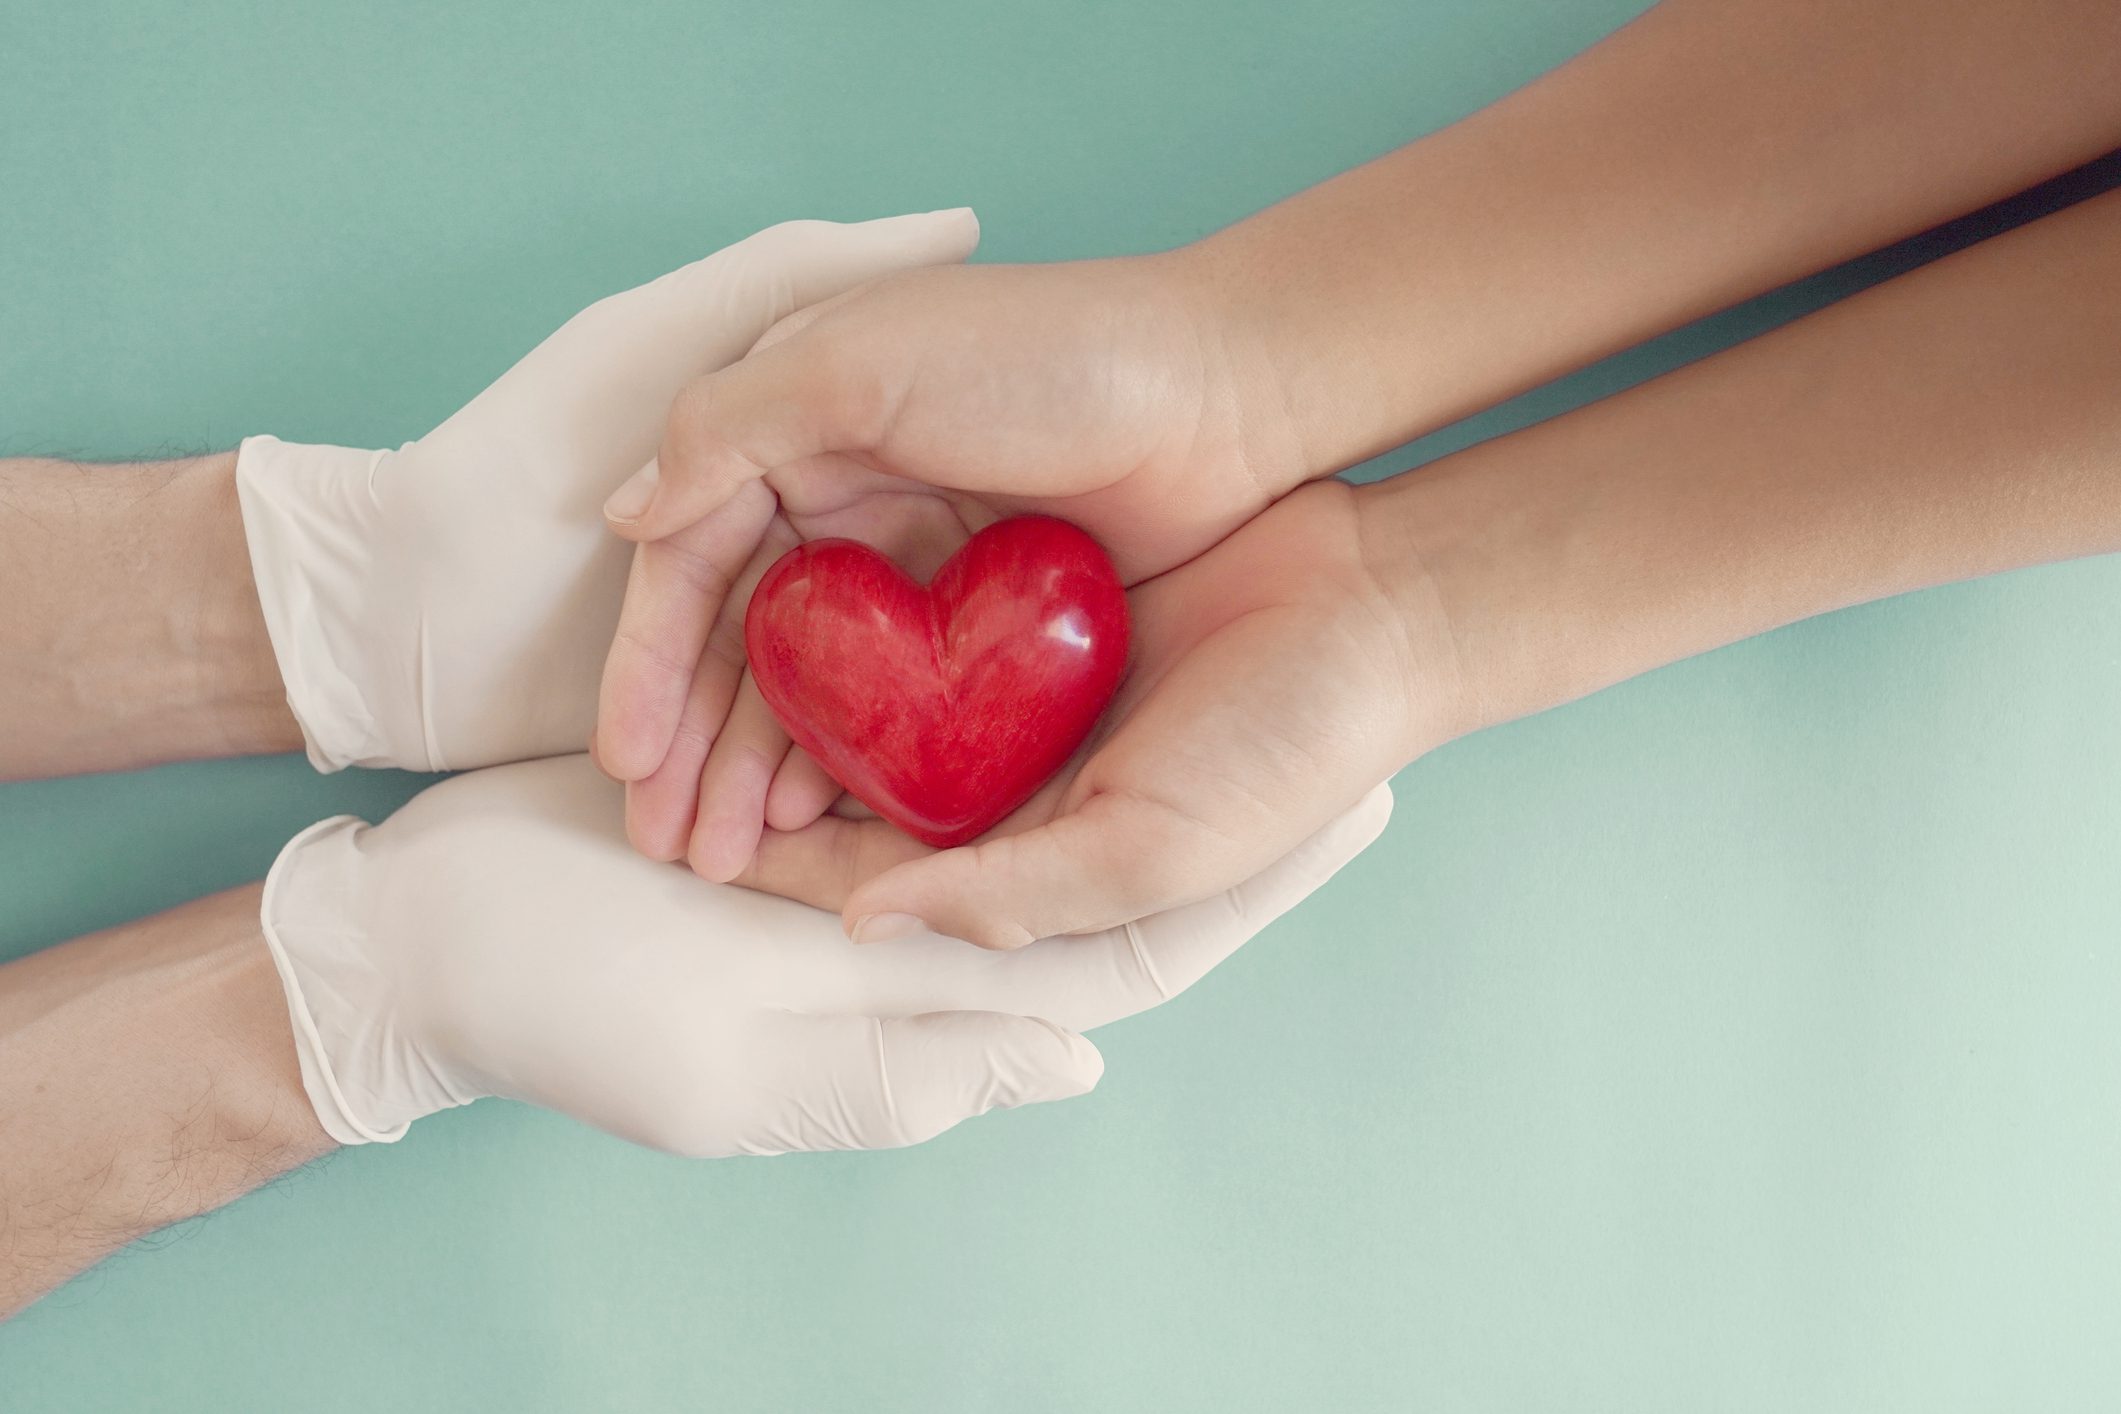 Morena presenta iniciativa para que toda persona sea donadora potencial de órganos